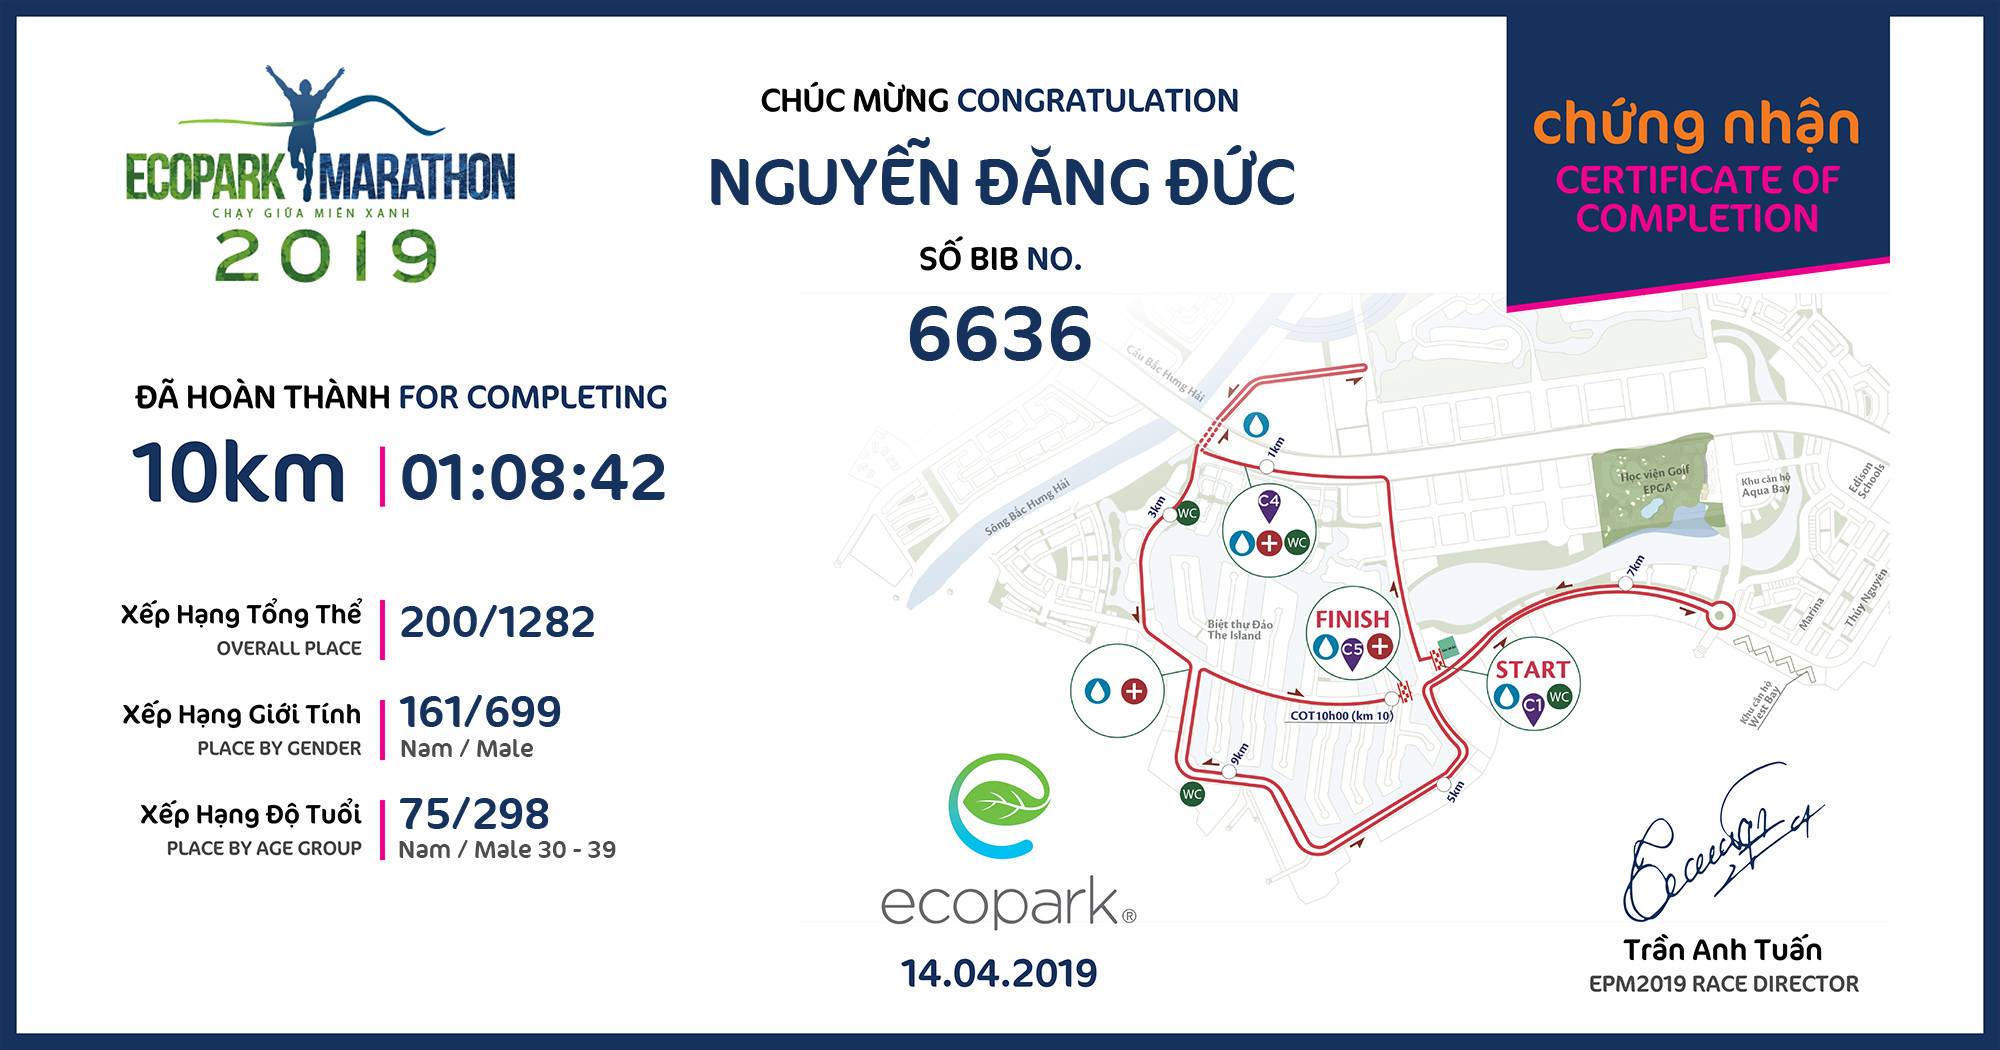 6636 - Nguyễn Đăng Đức